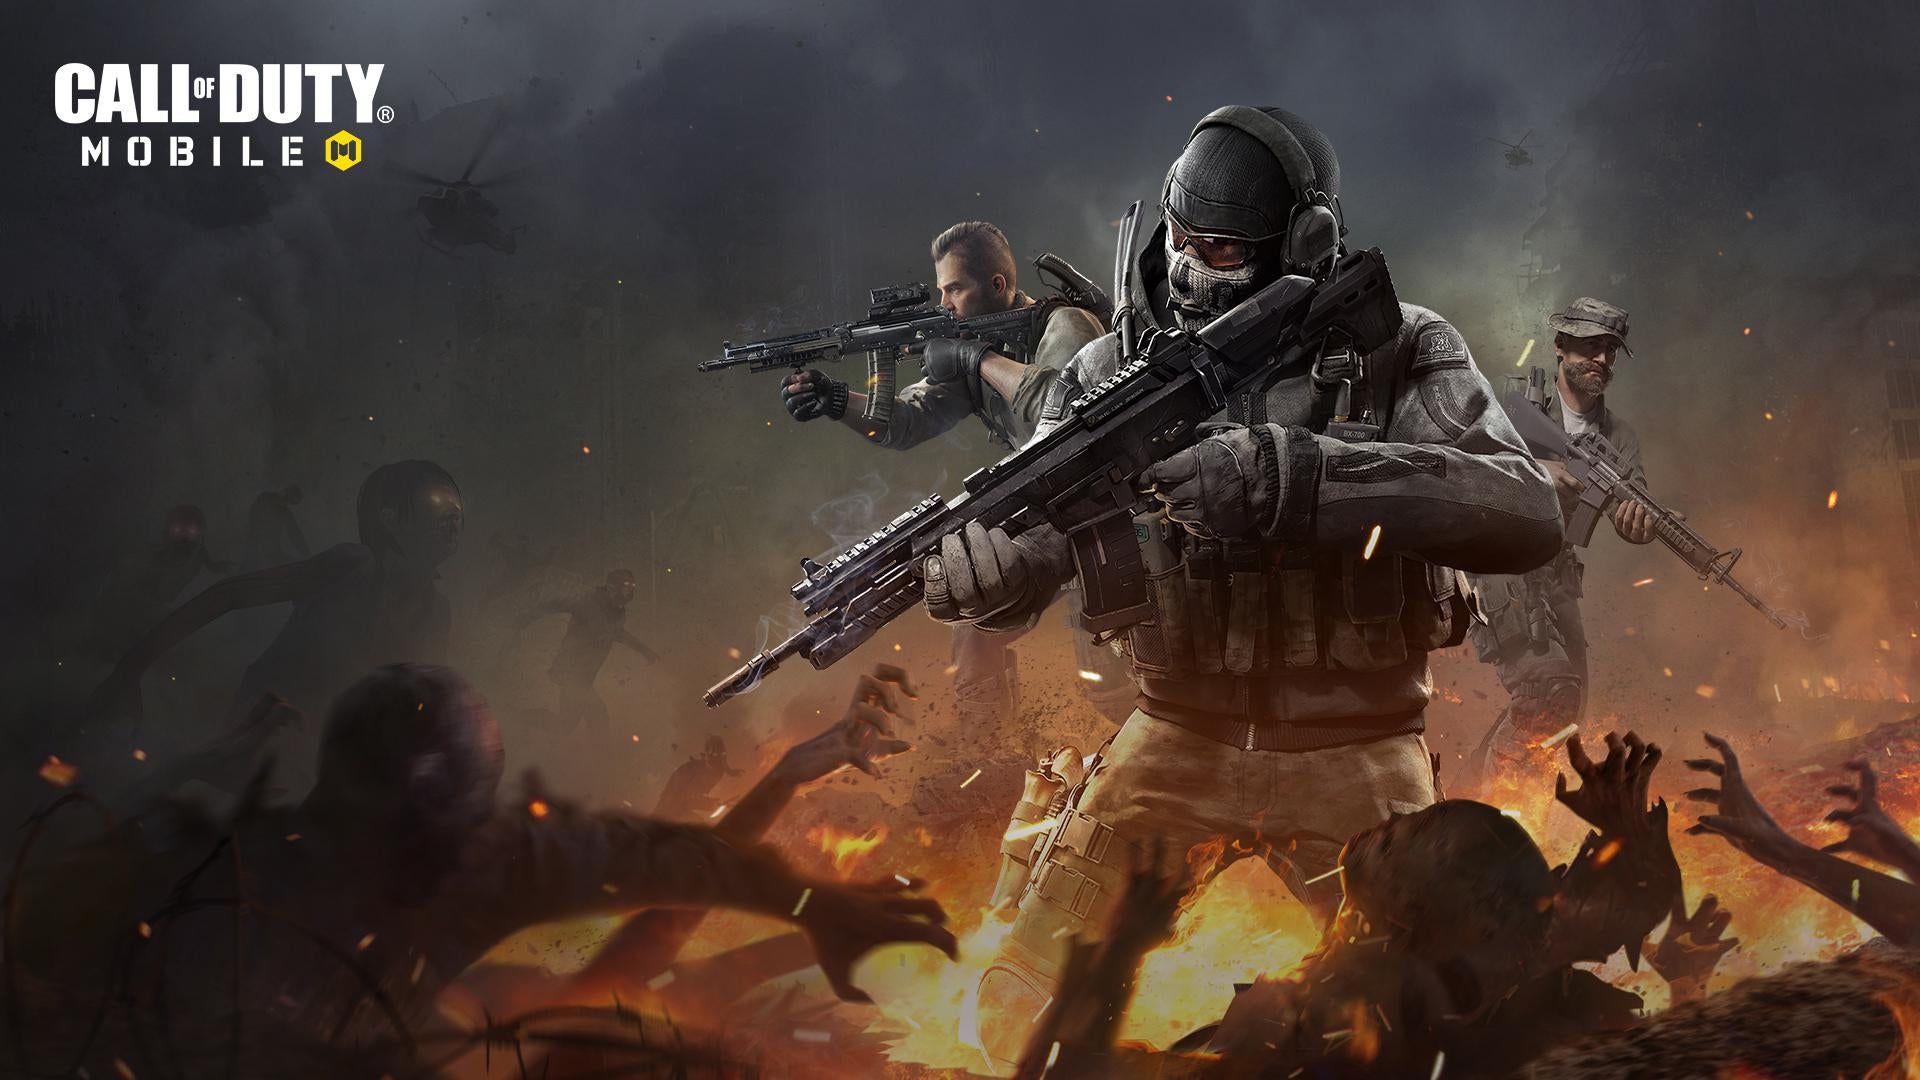 Анимация скина из Call of Duty Mobile поразила сеть детализацией и музыкой Циммера